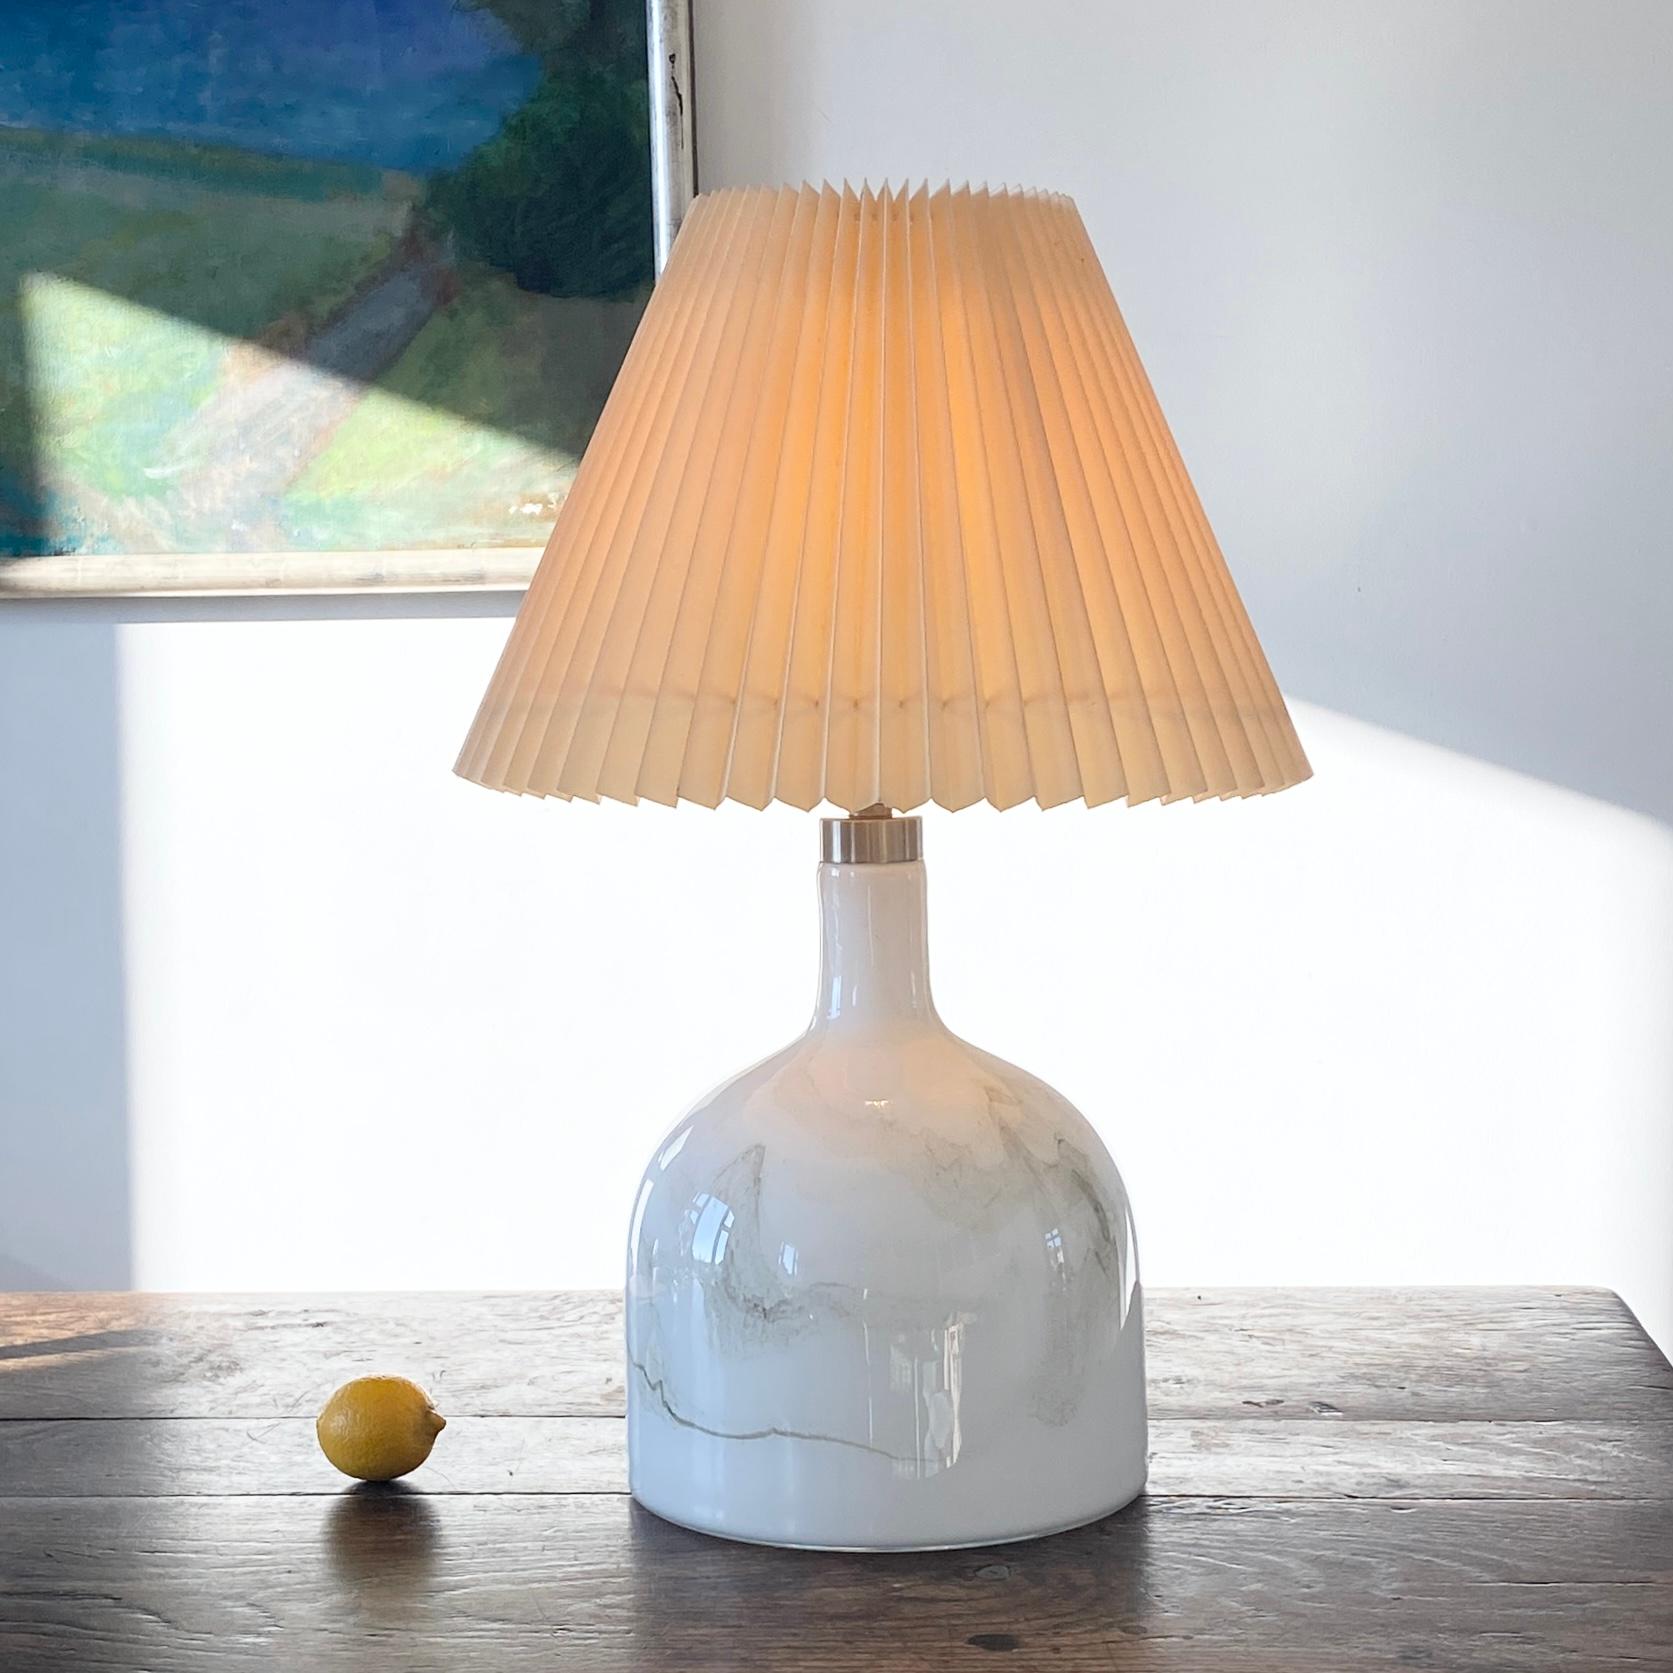 Lampe de table danoise Sakura Holmegaard de Michael Bang pour Holmegaard.
La lampe de table Sakura est fabriquée en verre opalin épais blanc et gris. La lampe est faite de tourbillons de verre fondu sous-jacents au verre clair lisse, donnant la